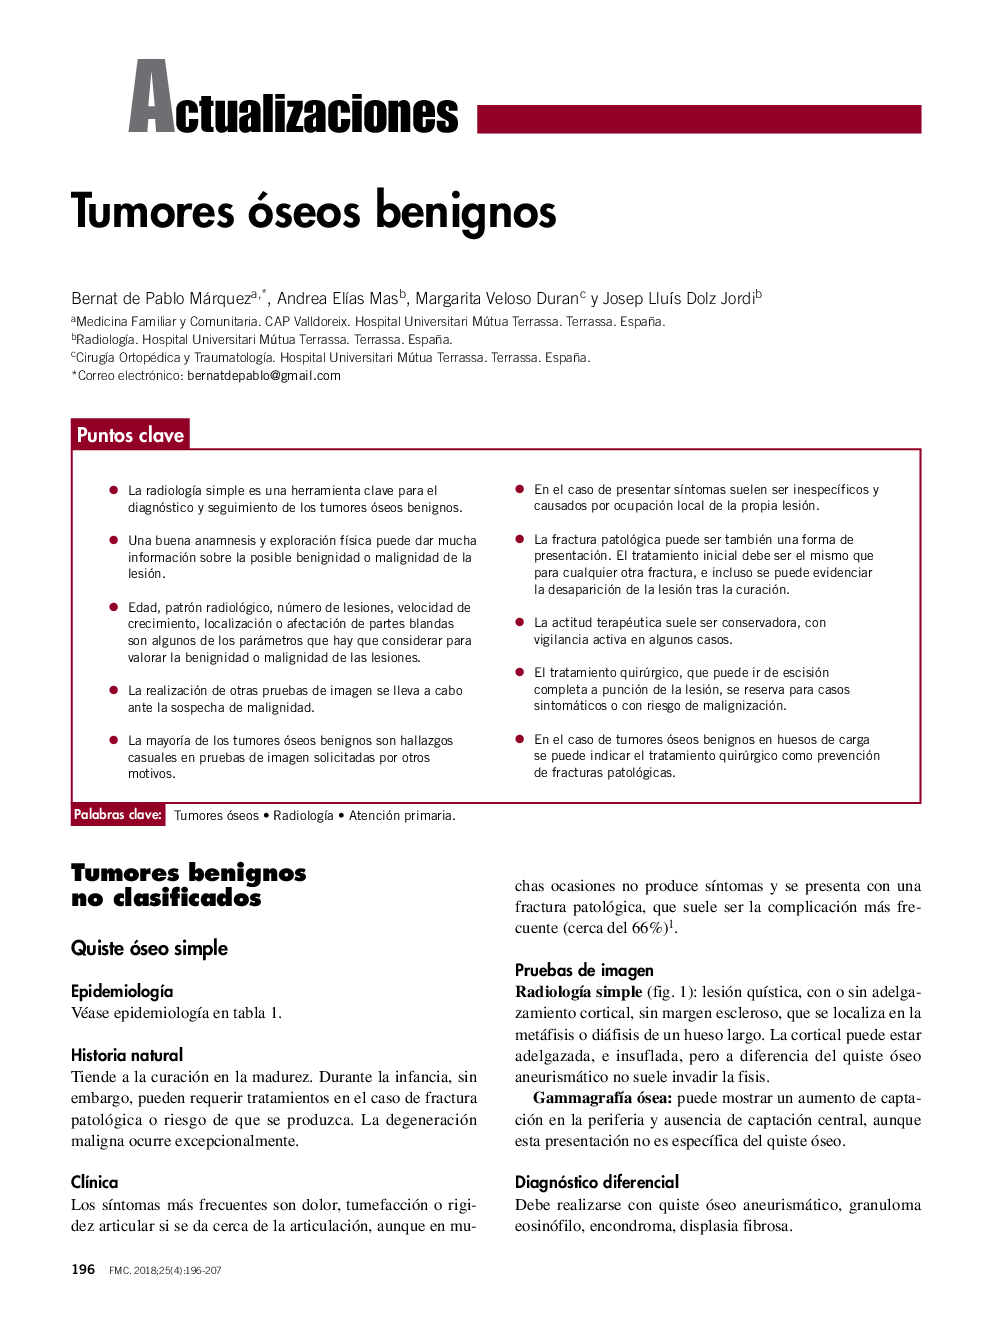 Tumores óseos benignos